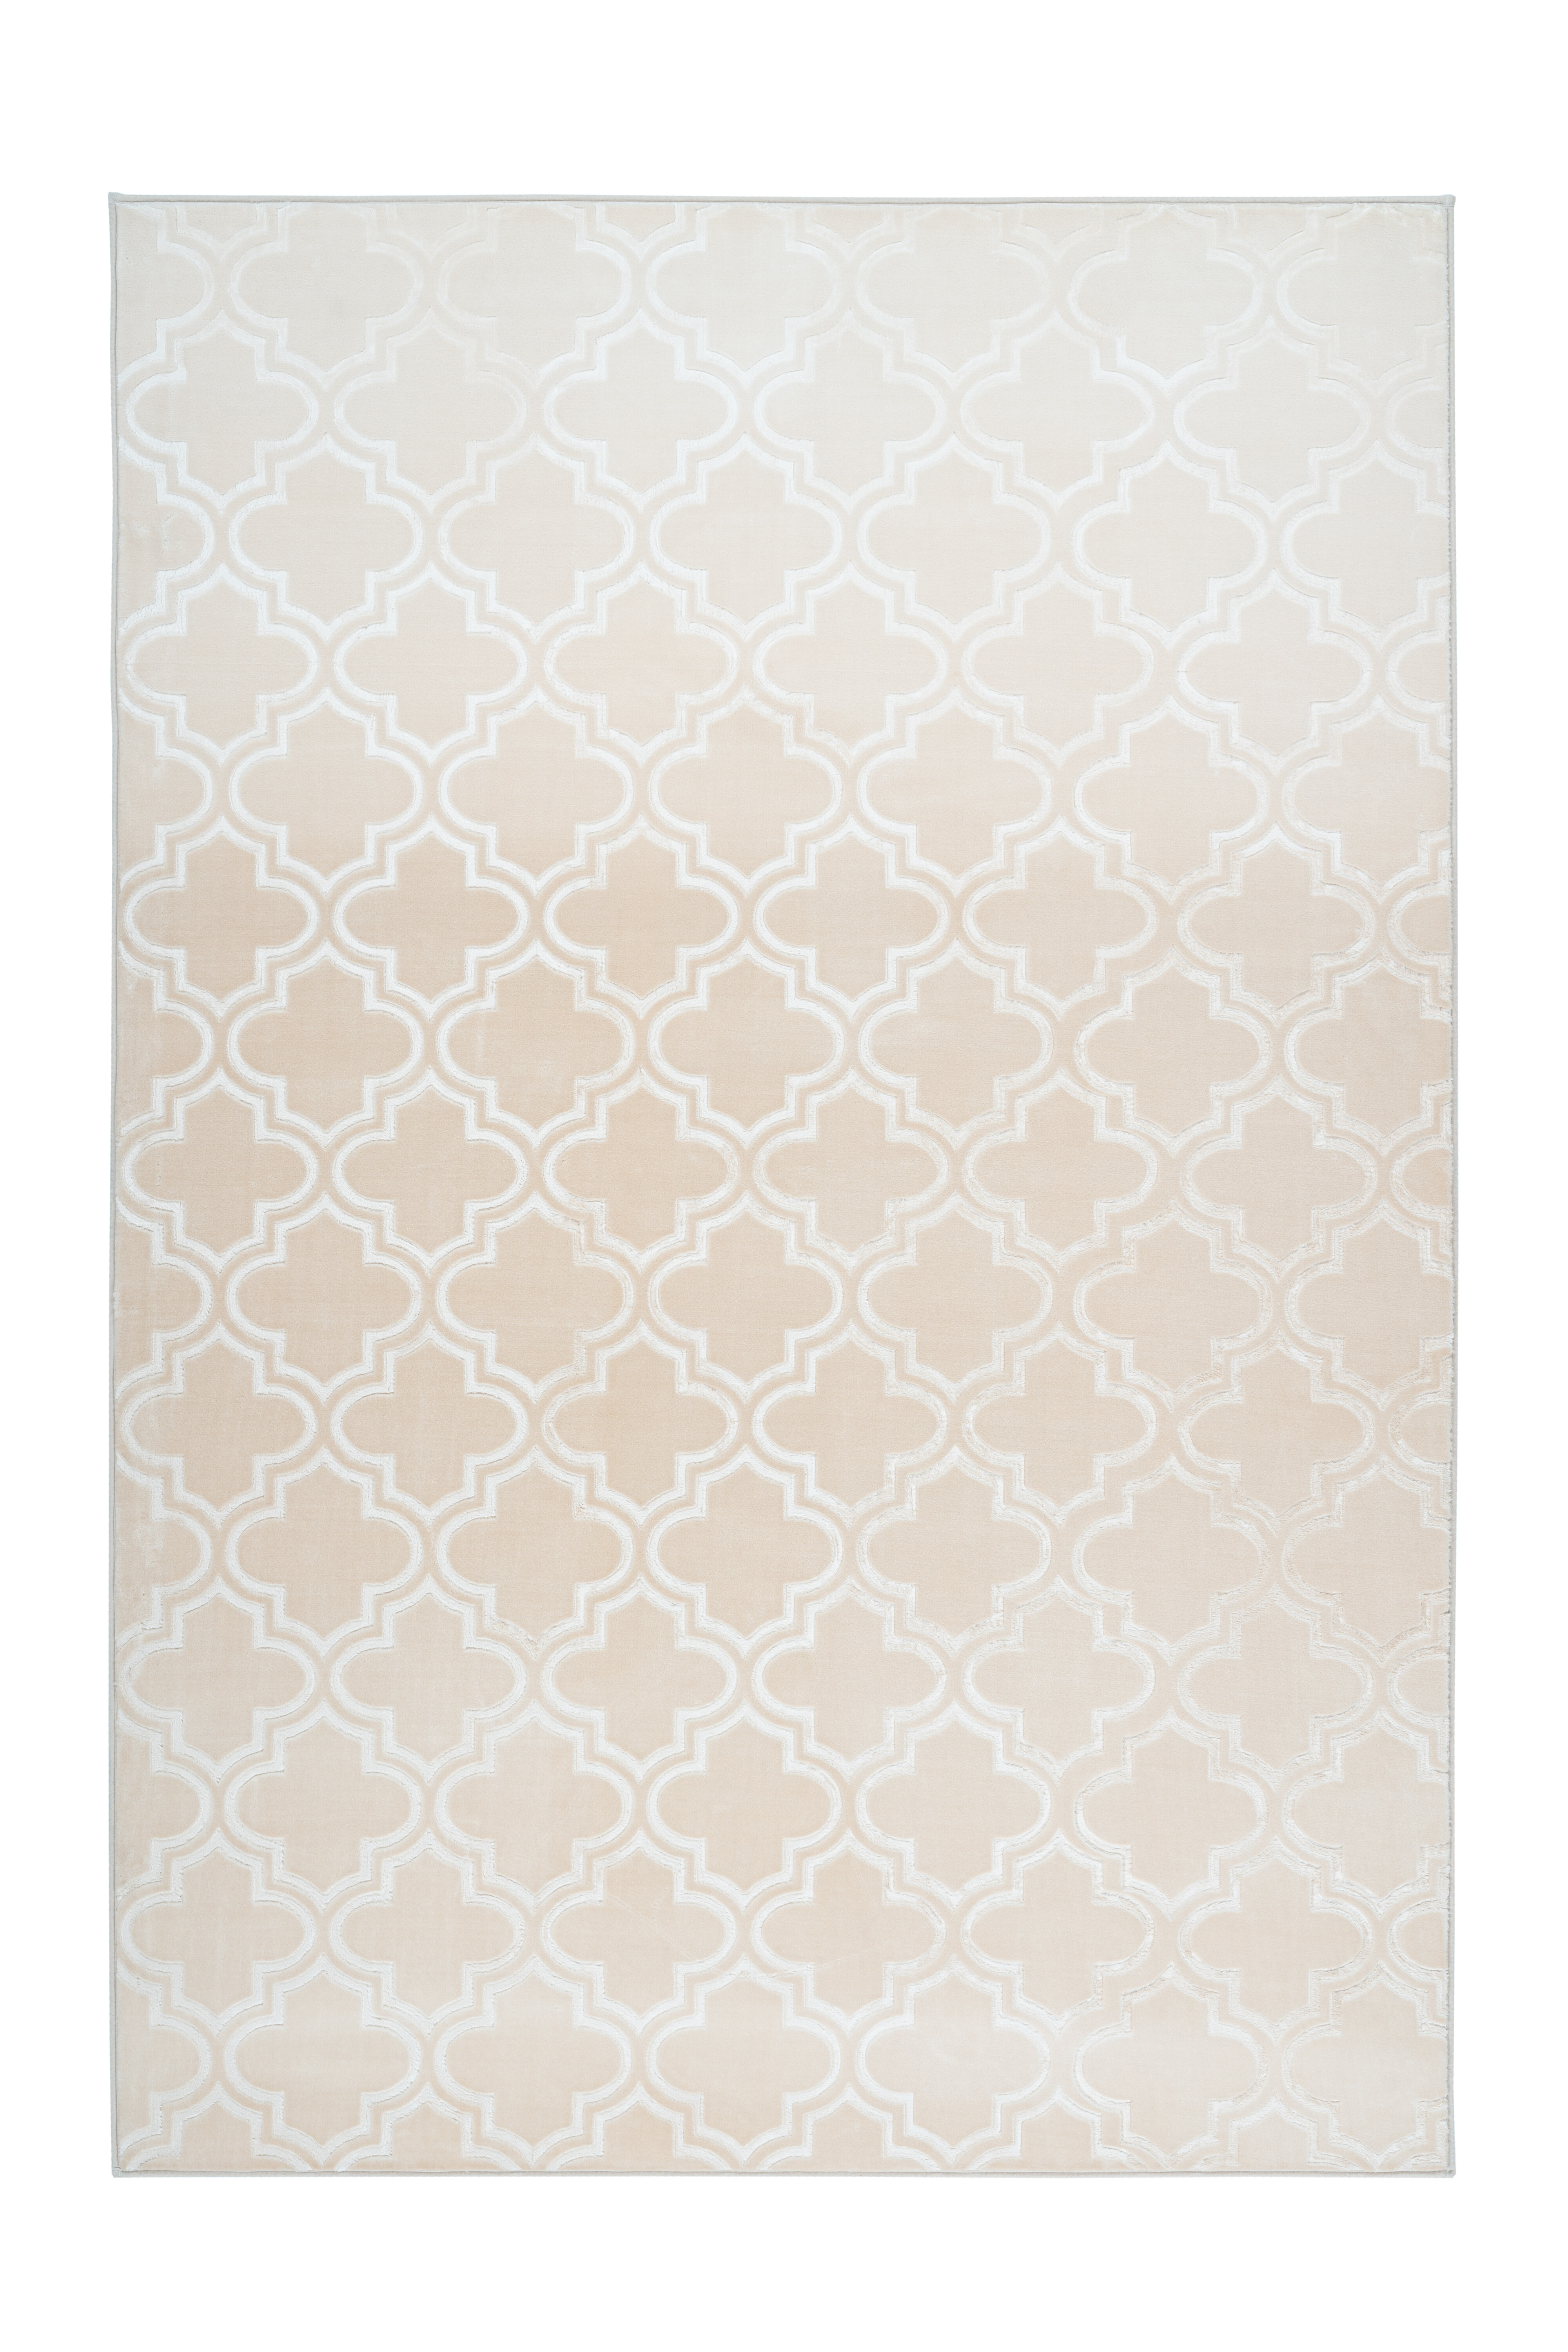 Kayoom Vloerkleed 'Monroe 100' kleur crème, 120 x 170cm